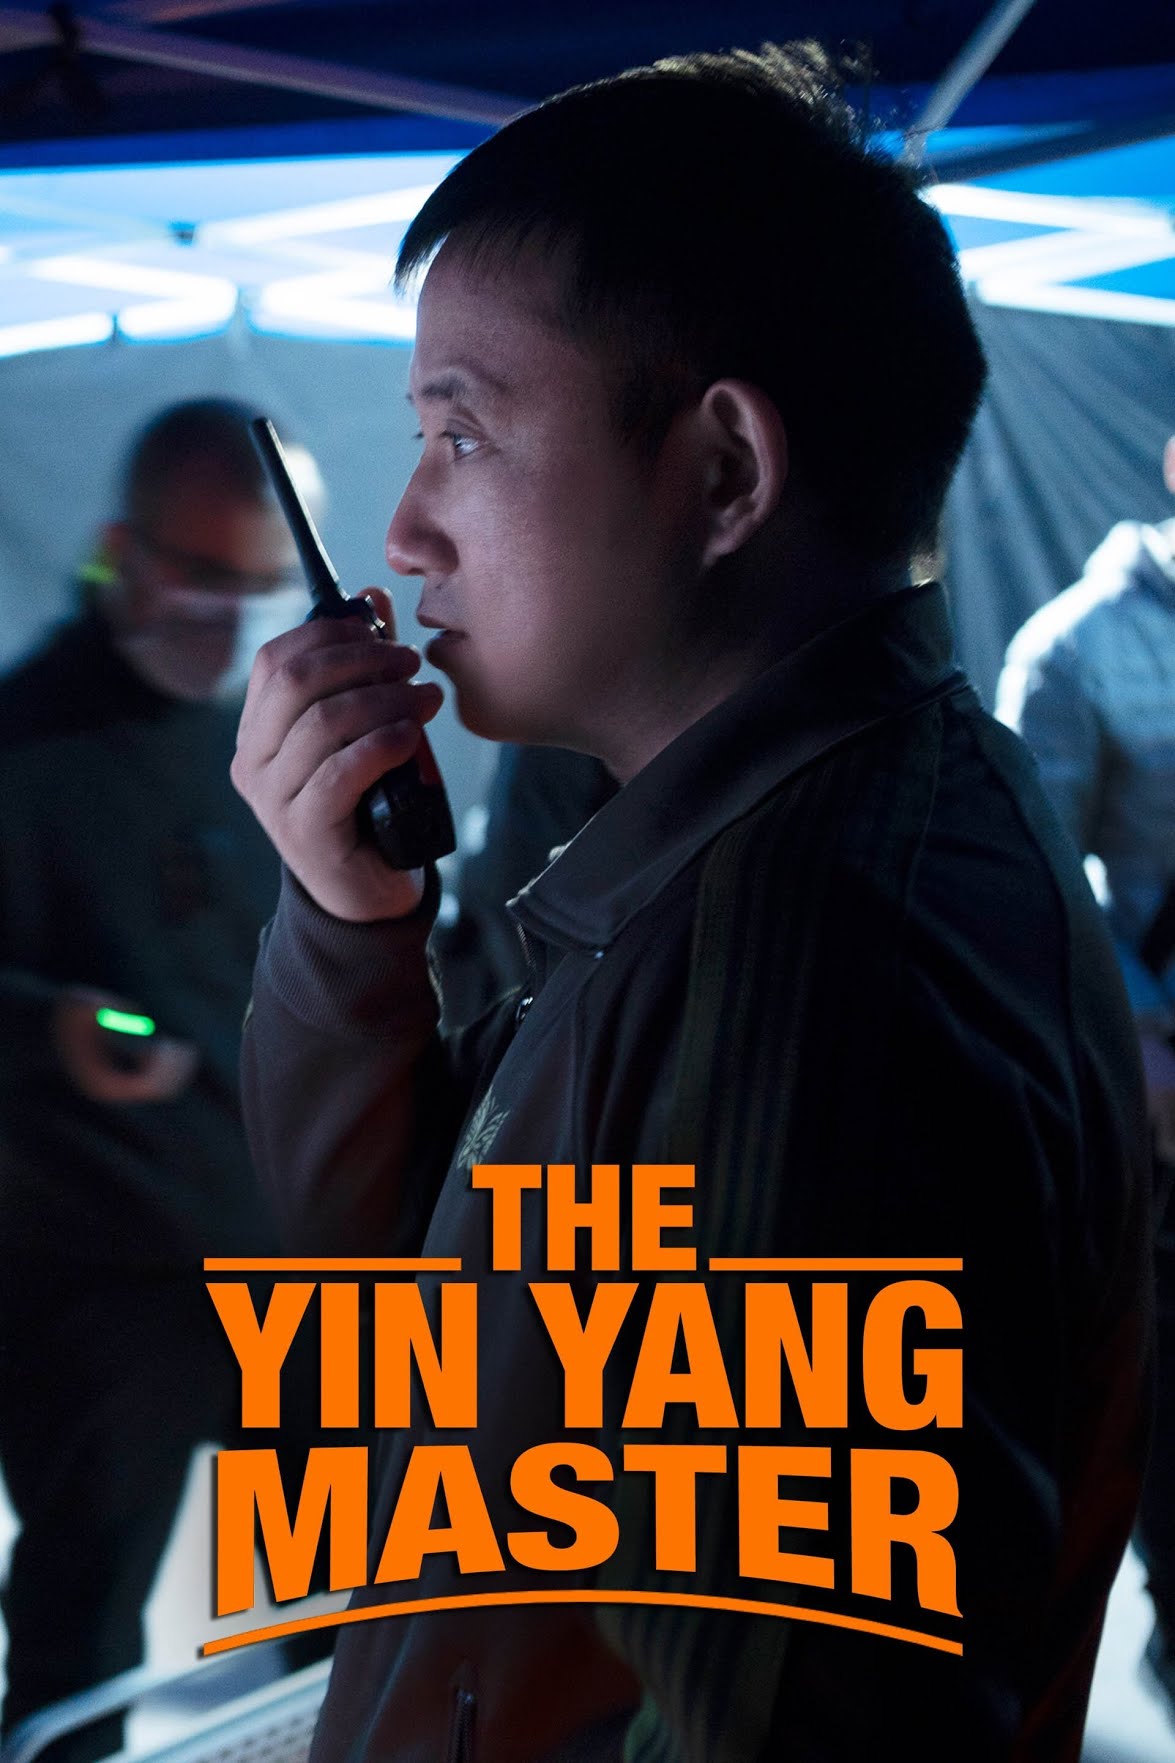 [จีน] The Yinyang Master (2021) หยิน หยาง ศึกมหาเวท [1080p] [NETFLIX] [พากย์จีน 5.1] [Soundtrack บรรยายไทย + อังกฤษ] [เสียงจีน + ซับไทย] [PANDAFILE]